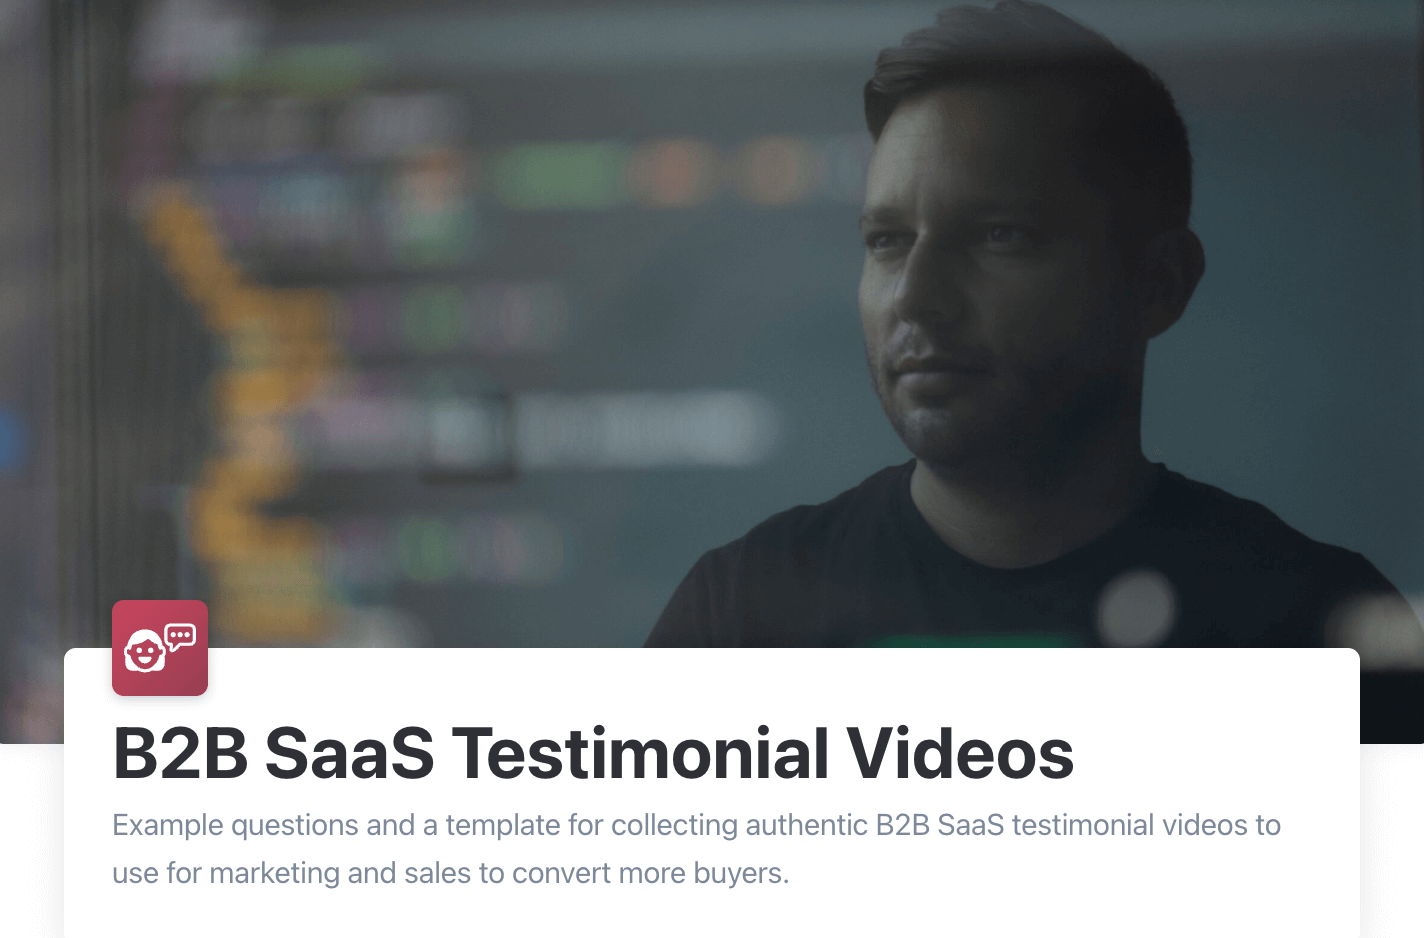 B2B SaaS testimonial videos